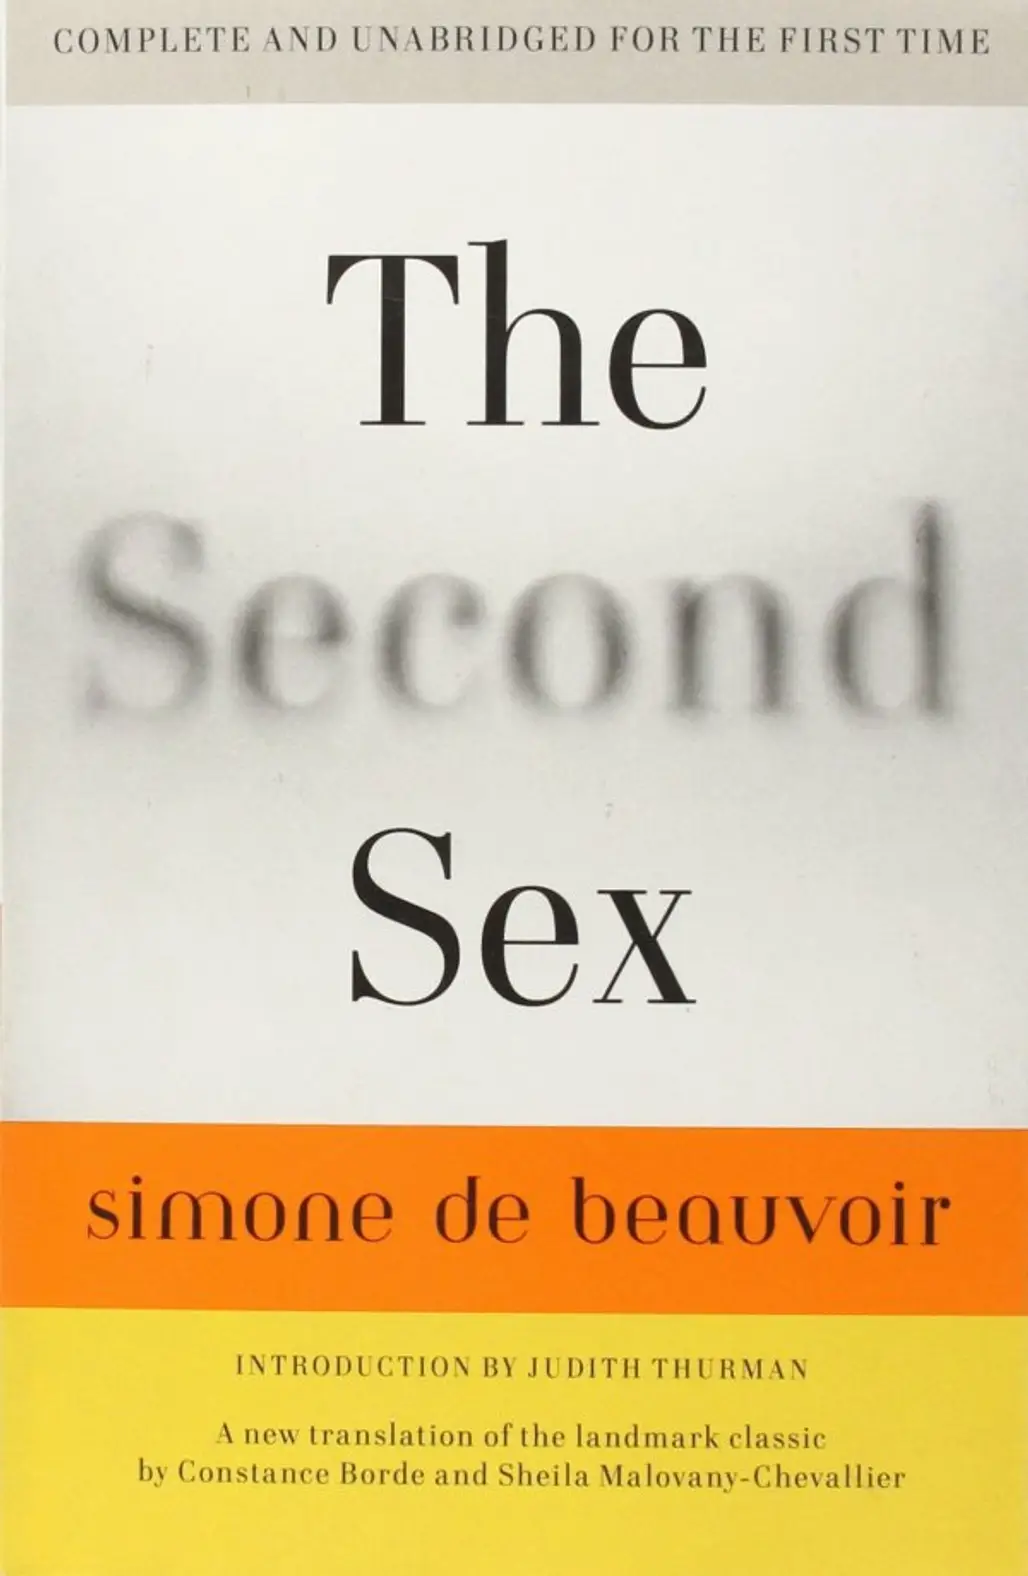 The Second Sex by Simone De Beauvoir